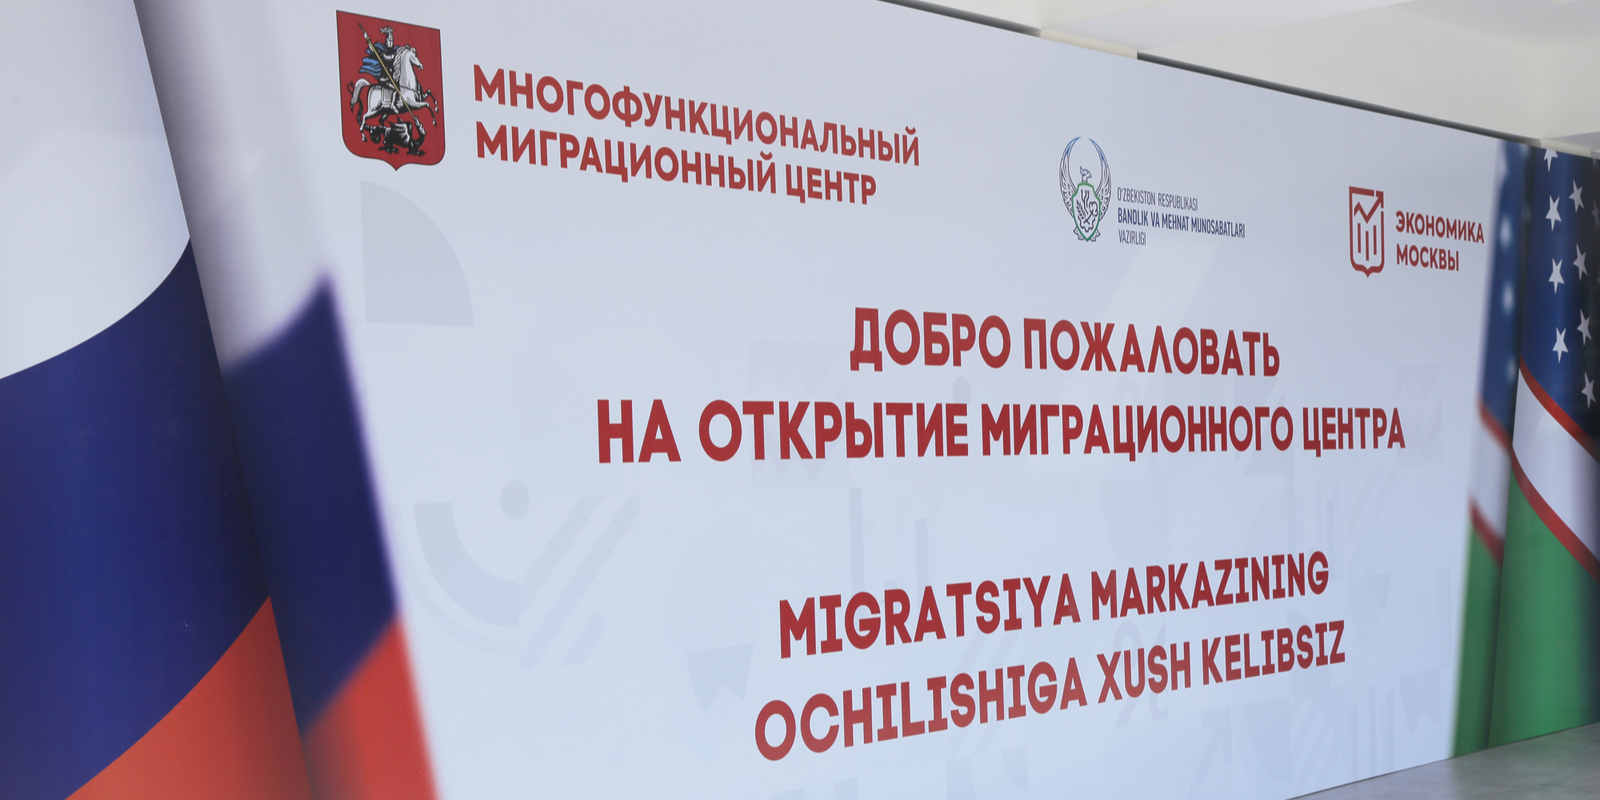 Миграционный центр Москвы открыл представительство в Узбекистане